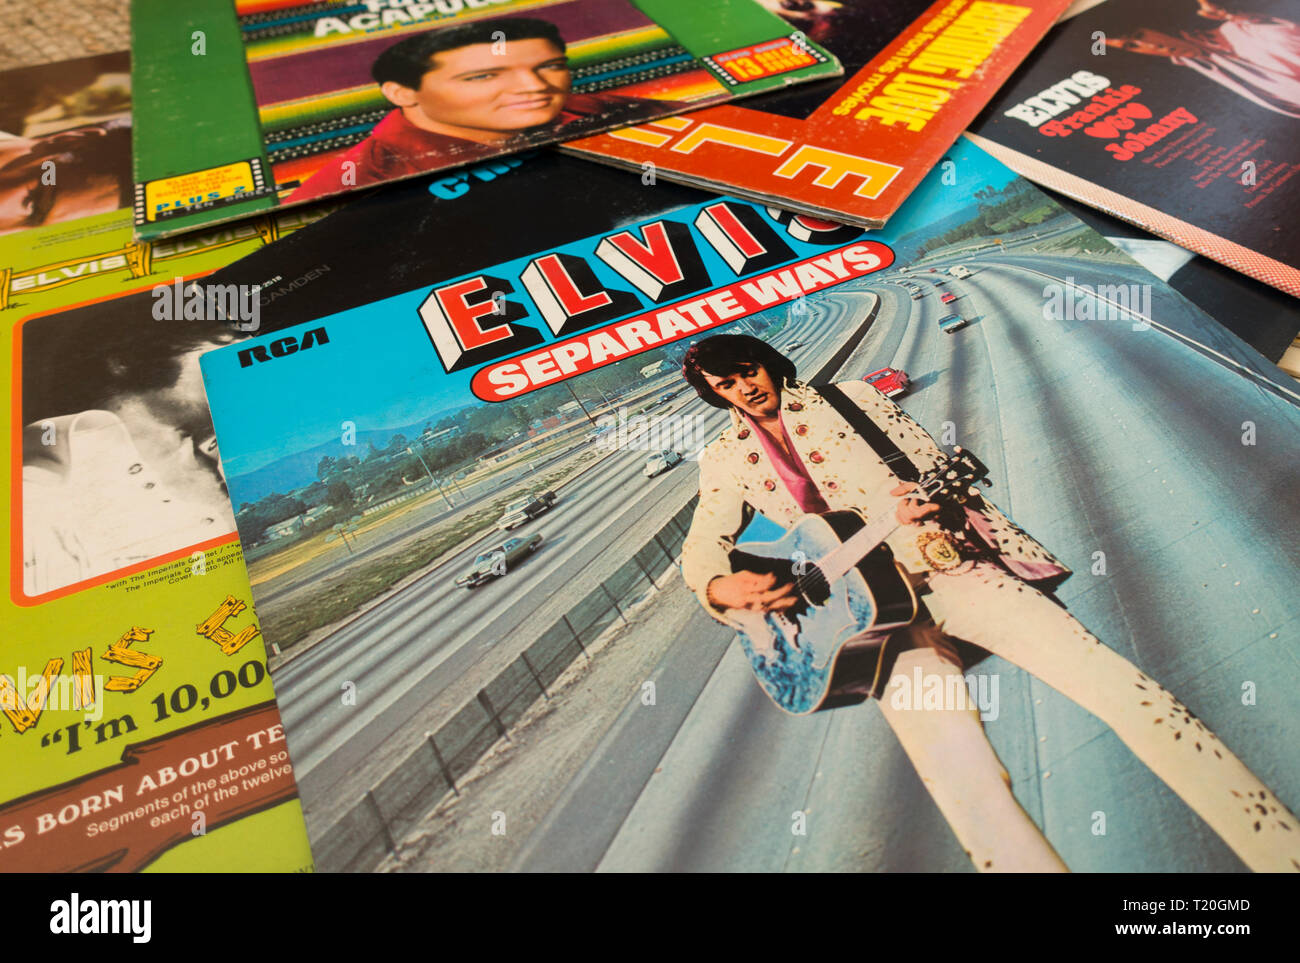 Une collection d'albums de musique, Elvis Presley records., LP's. Banque D'Images